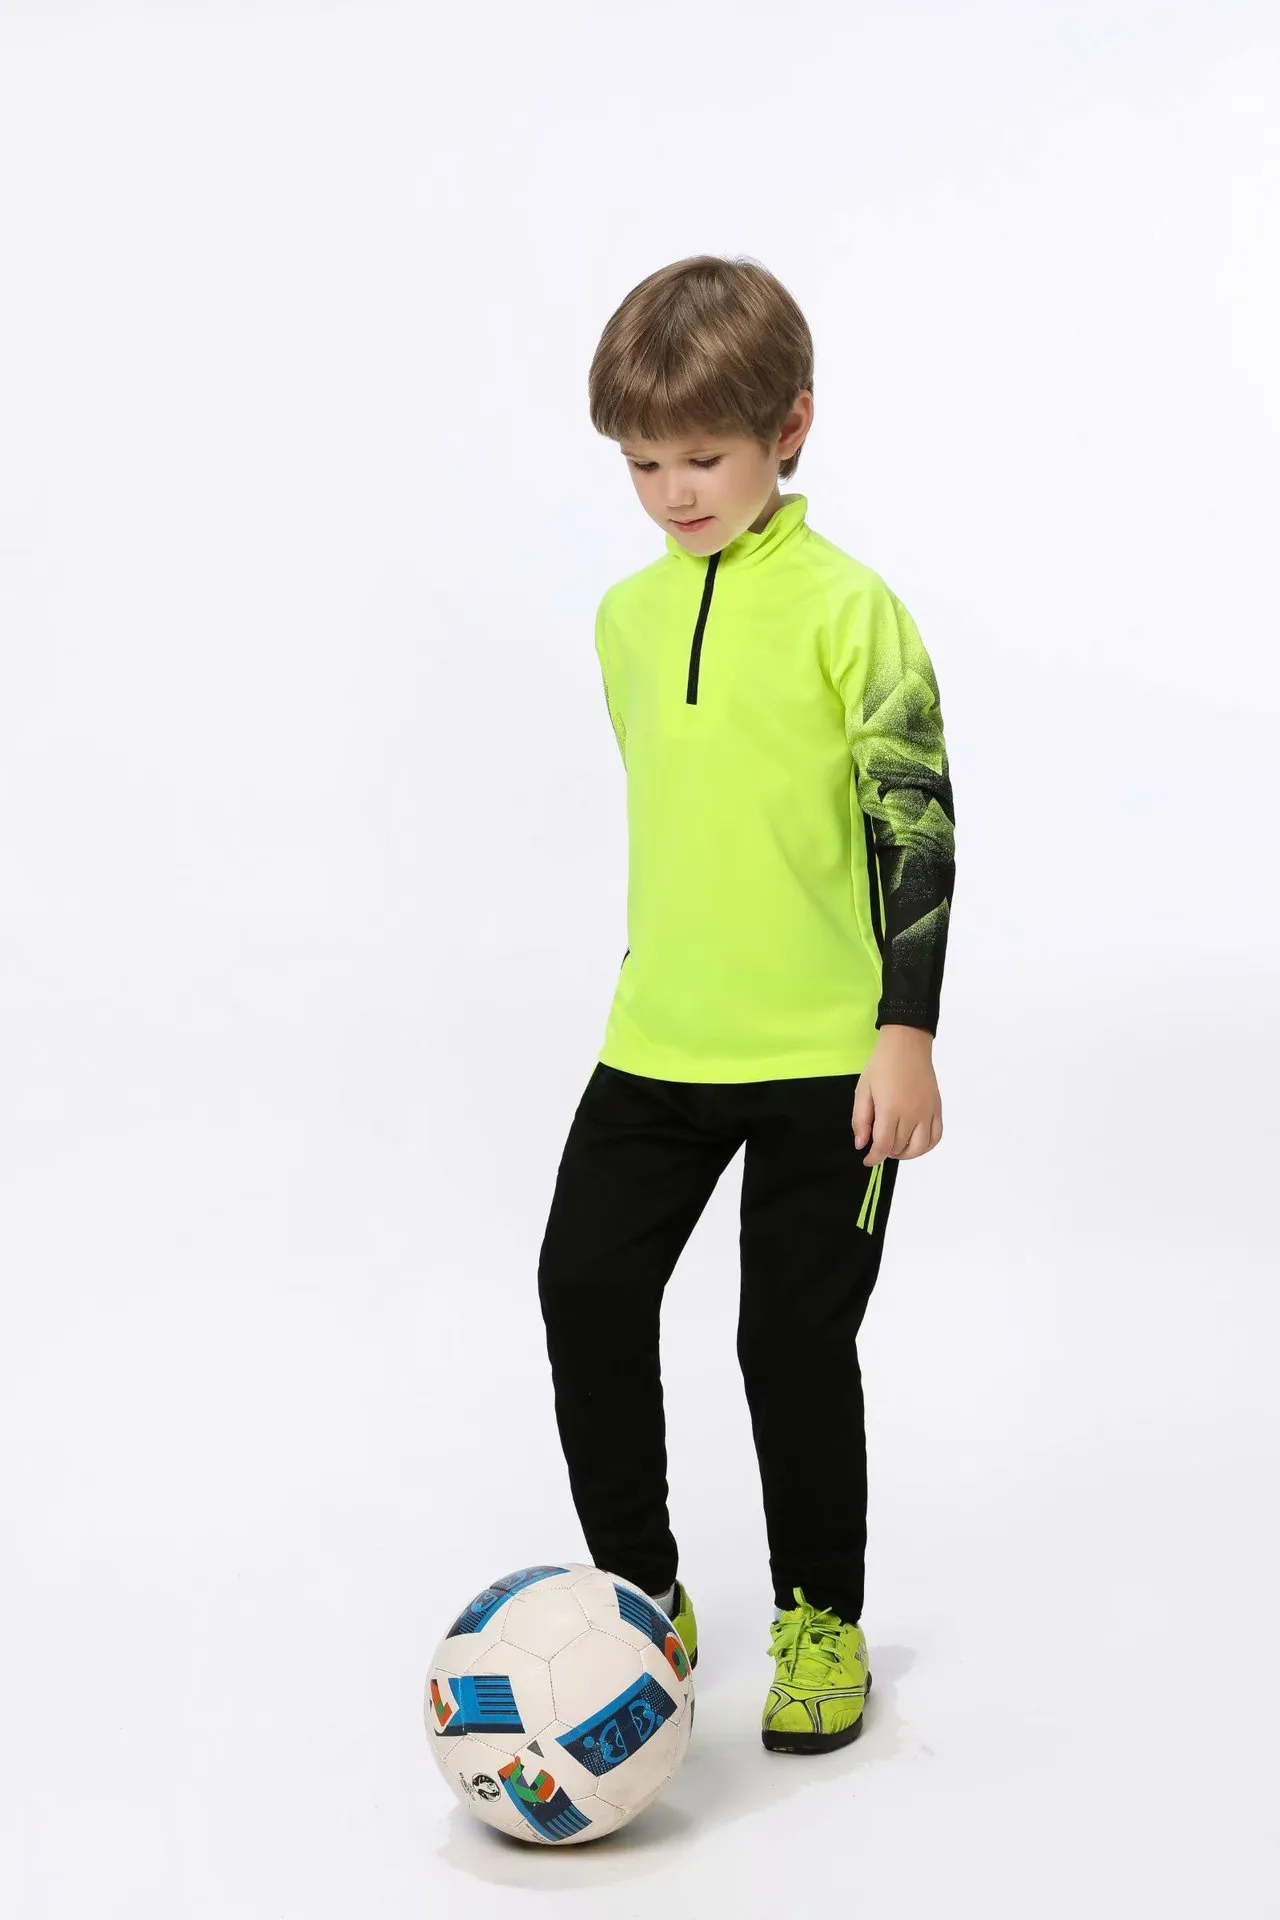 Jessie_kicks # HD61 Oweens Design Maillots de mode Vêtements pour enfants Sport en plein air Support QC Photos avant expédition